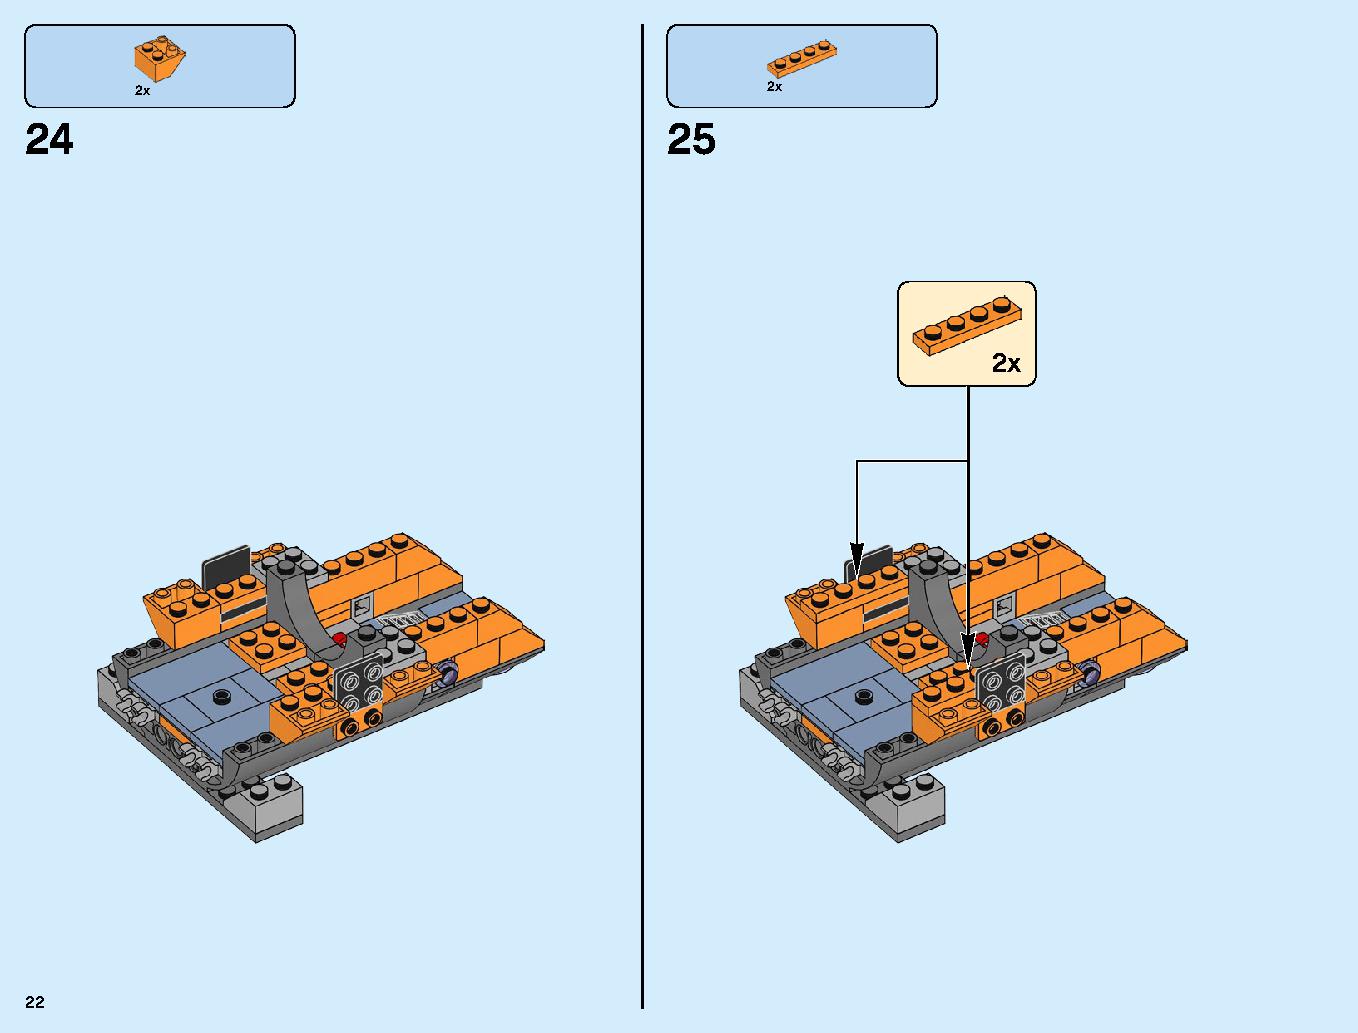 어벤져스 타노스: 최후의 전투 76107 레고 세트 제품정보 레고 조립설명서 22 page